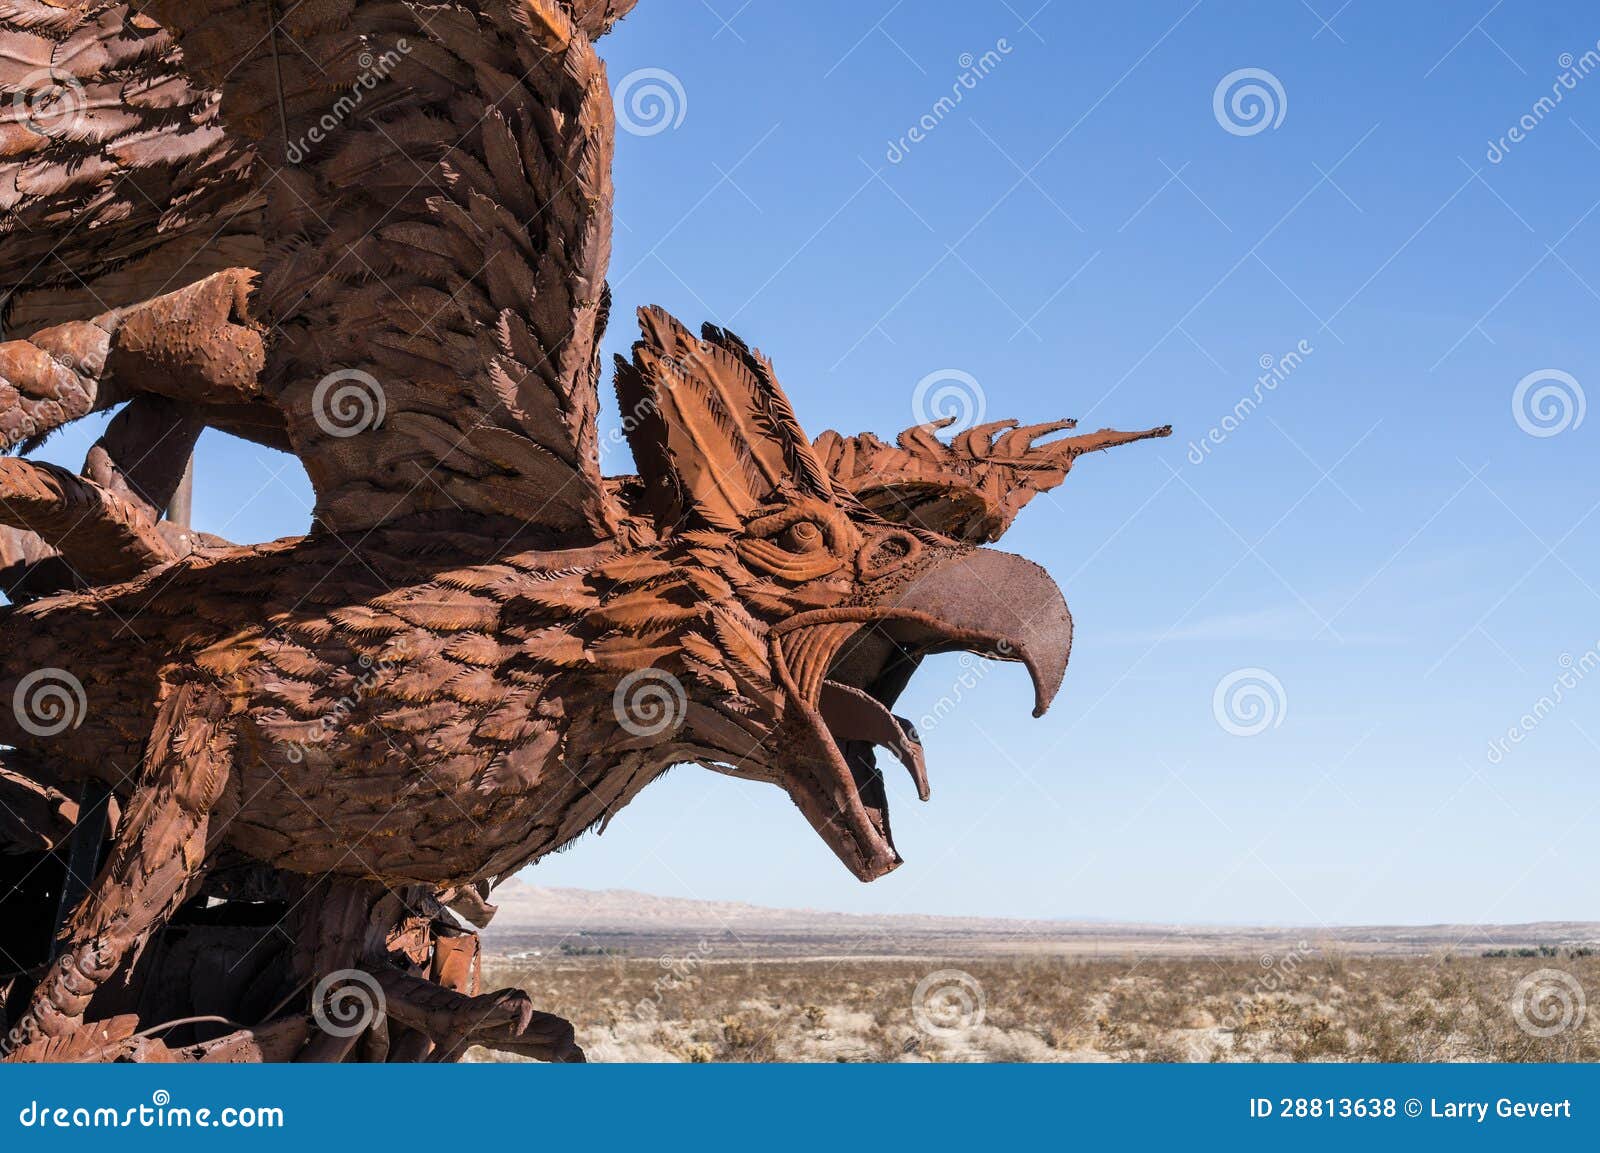 eagle sculpture in galleta meadows